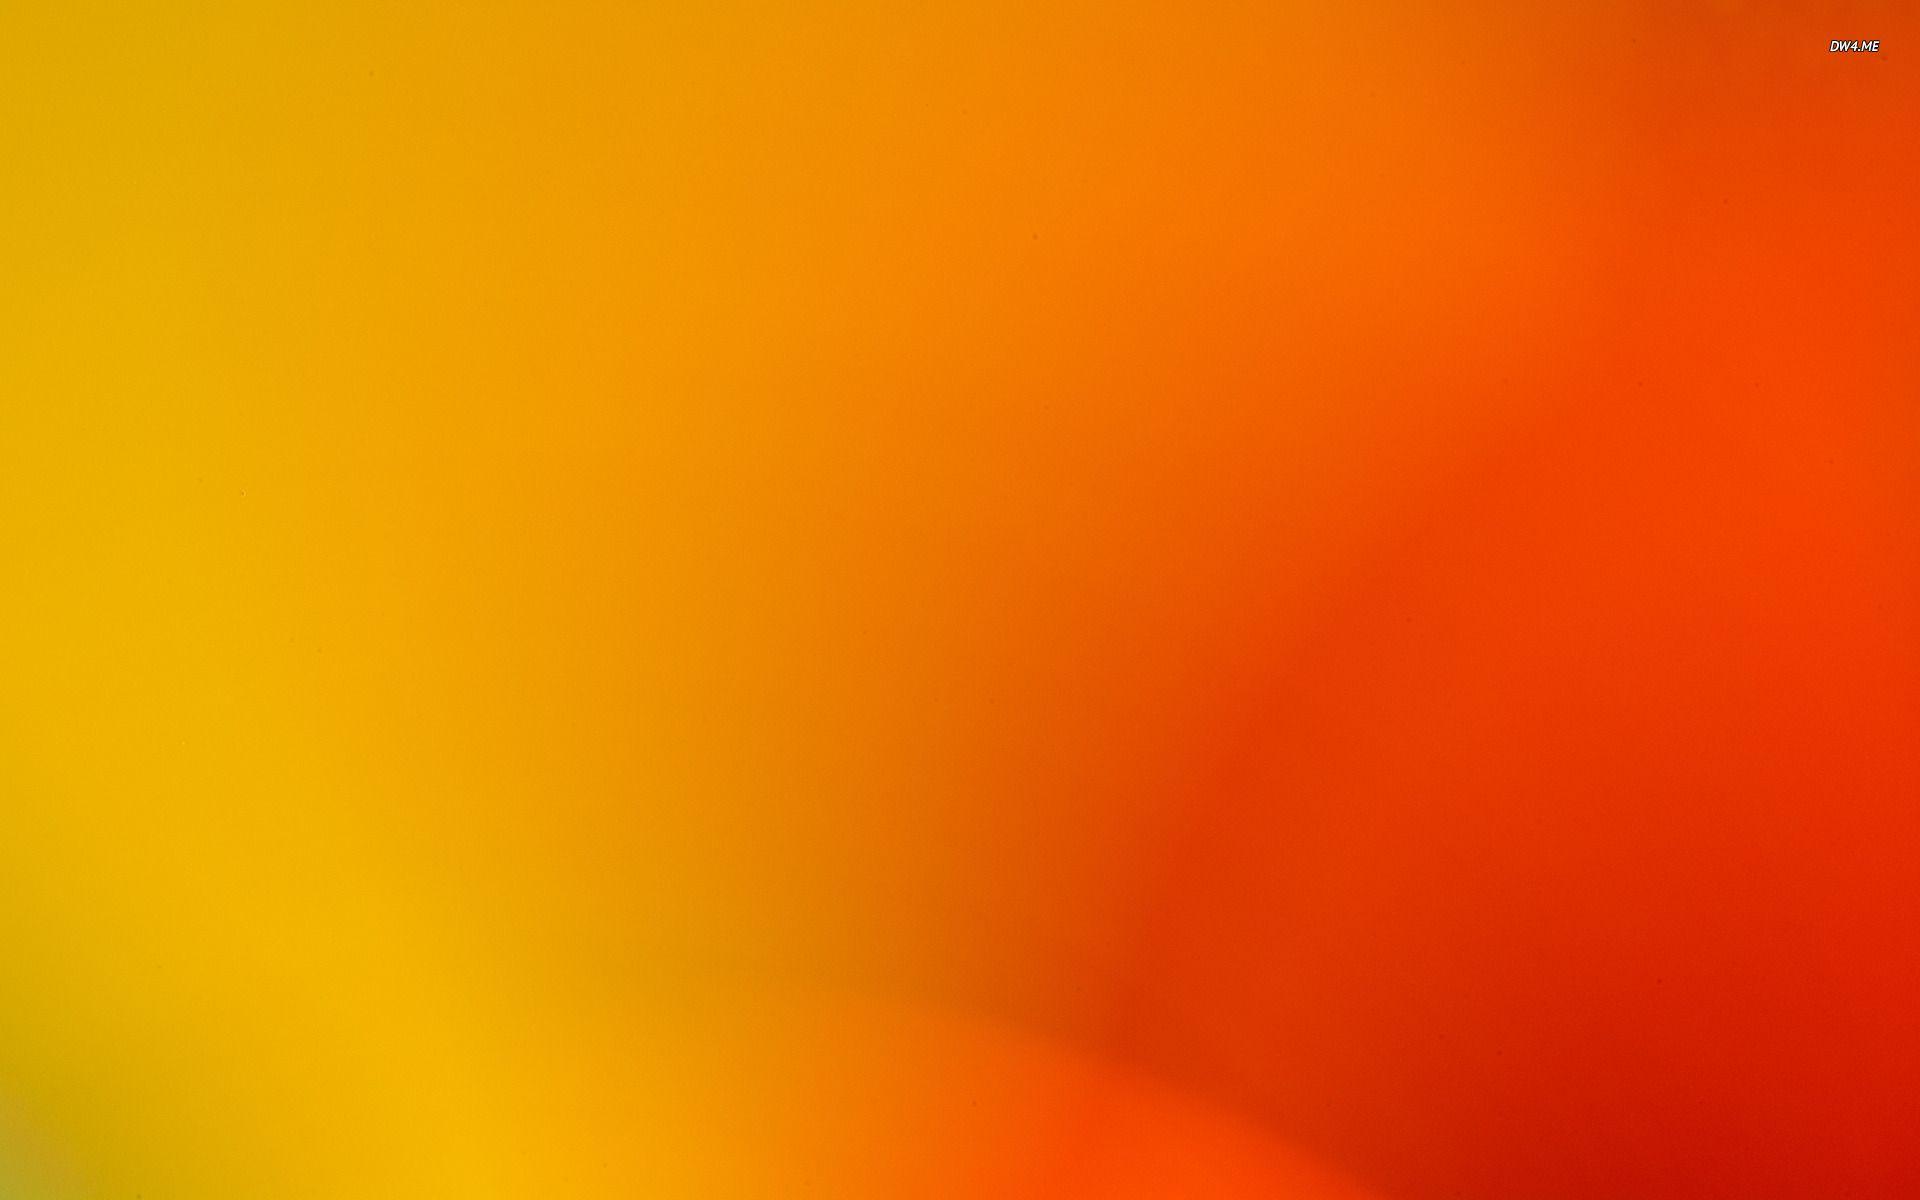 Nền vàng cam là một sự kết hợp hài hòa giữa sắc vàng và cam, tạo thành một bầu không khí ấm áp và thoải mái. Hình ảnh liên quan đến nền vàng cam sẽ mang đến cho bạn cảm giác hưng phấn và đầy sống động. Hãy xem hình ảnh để tìm hiểu thêm về nền vàng cam và sự đẹp đẽ của nó.